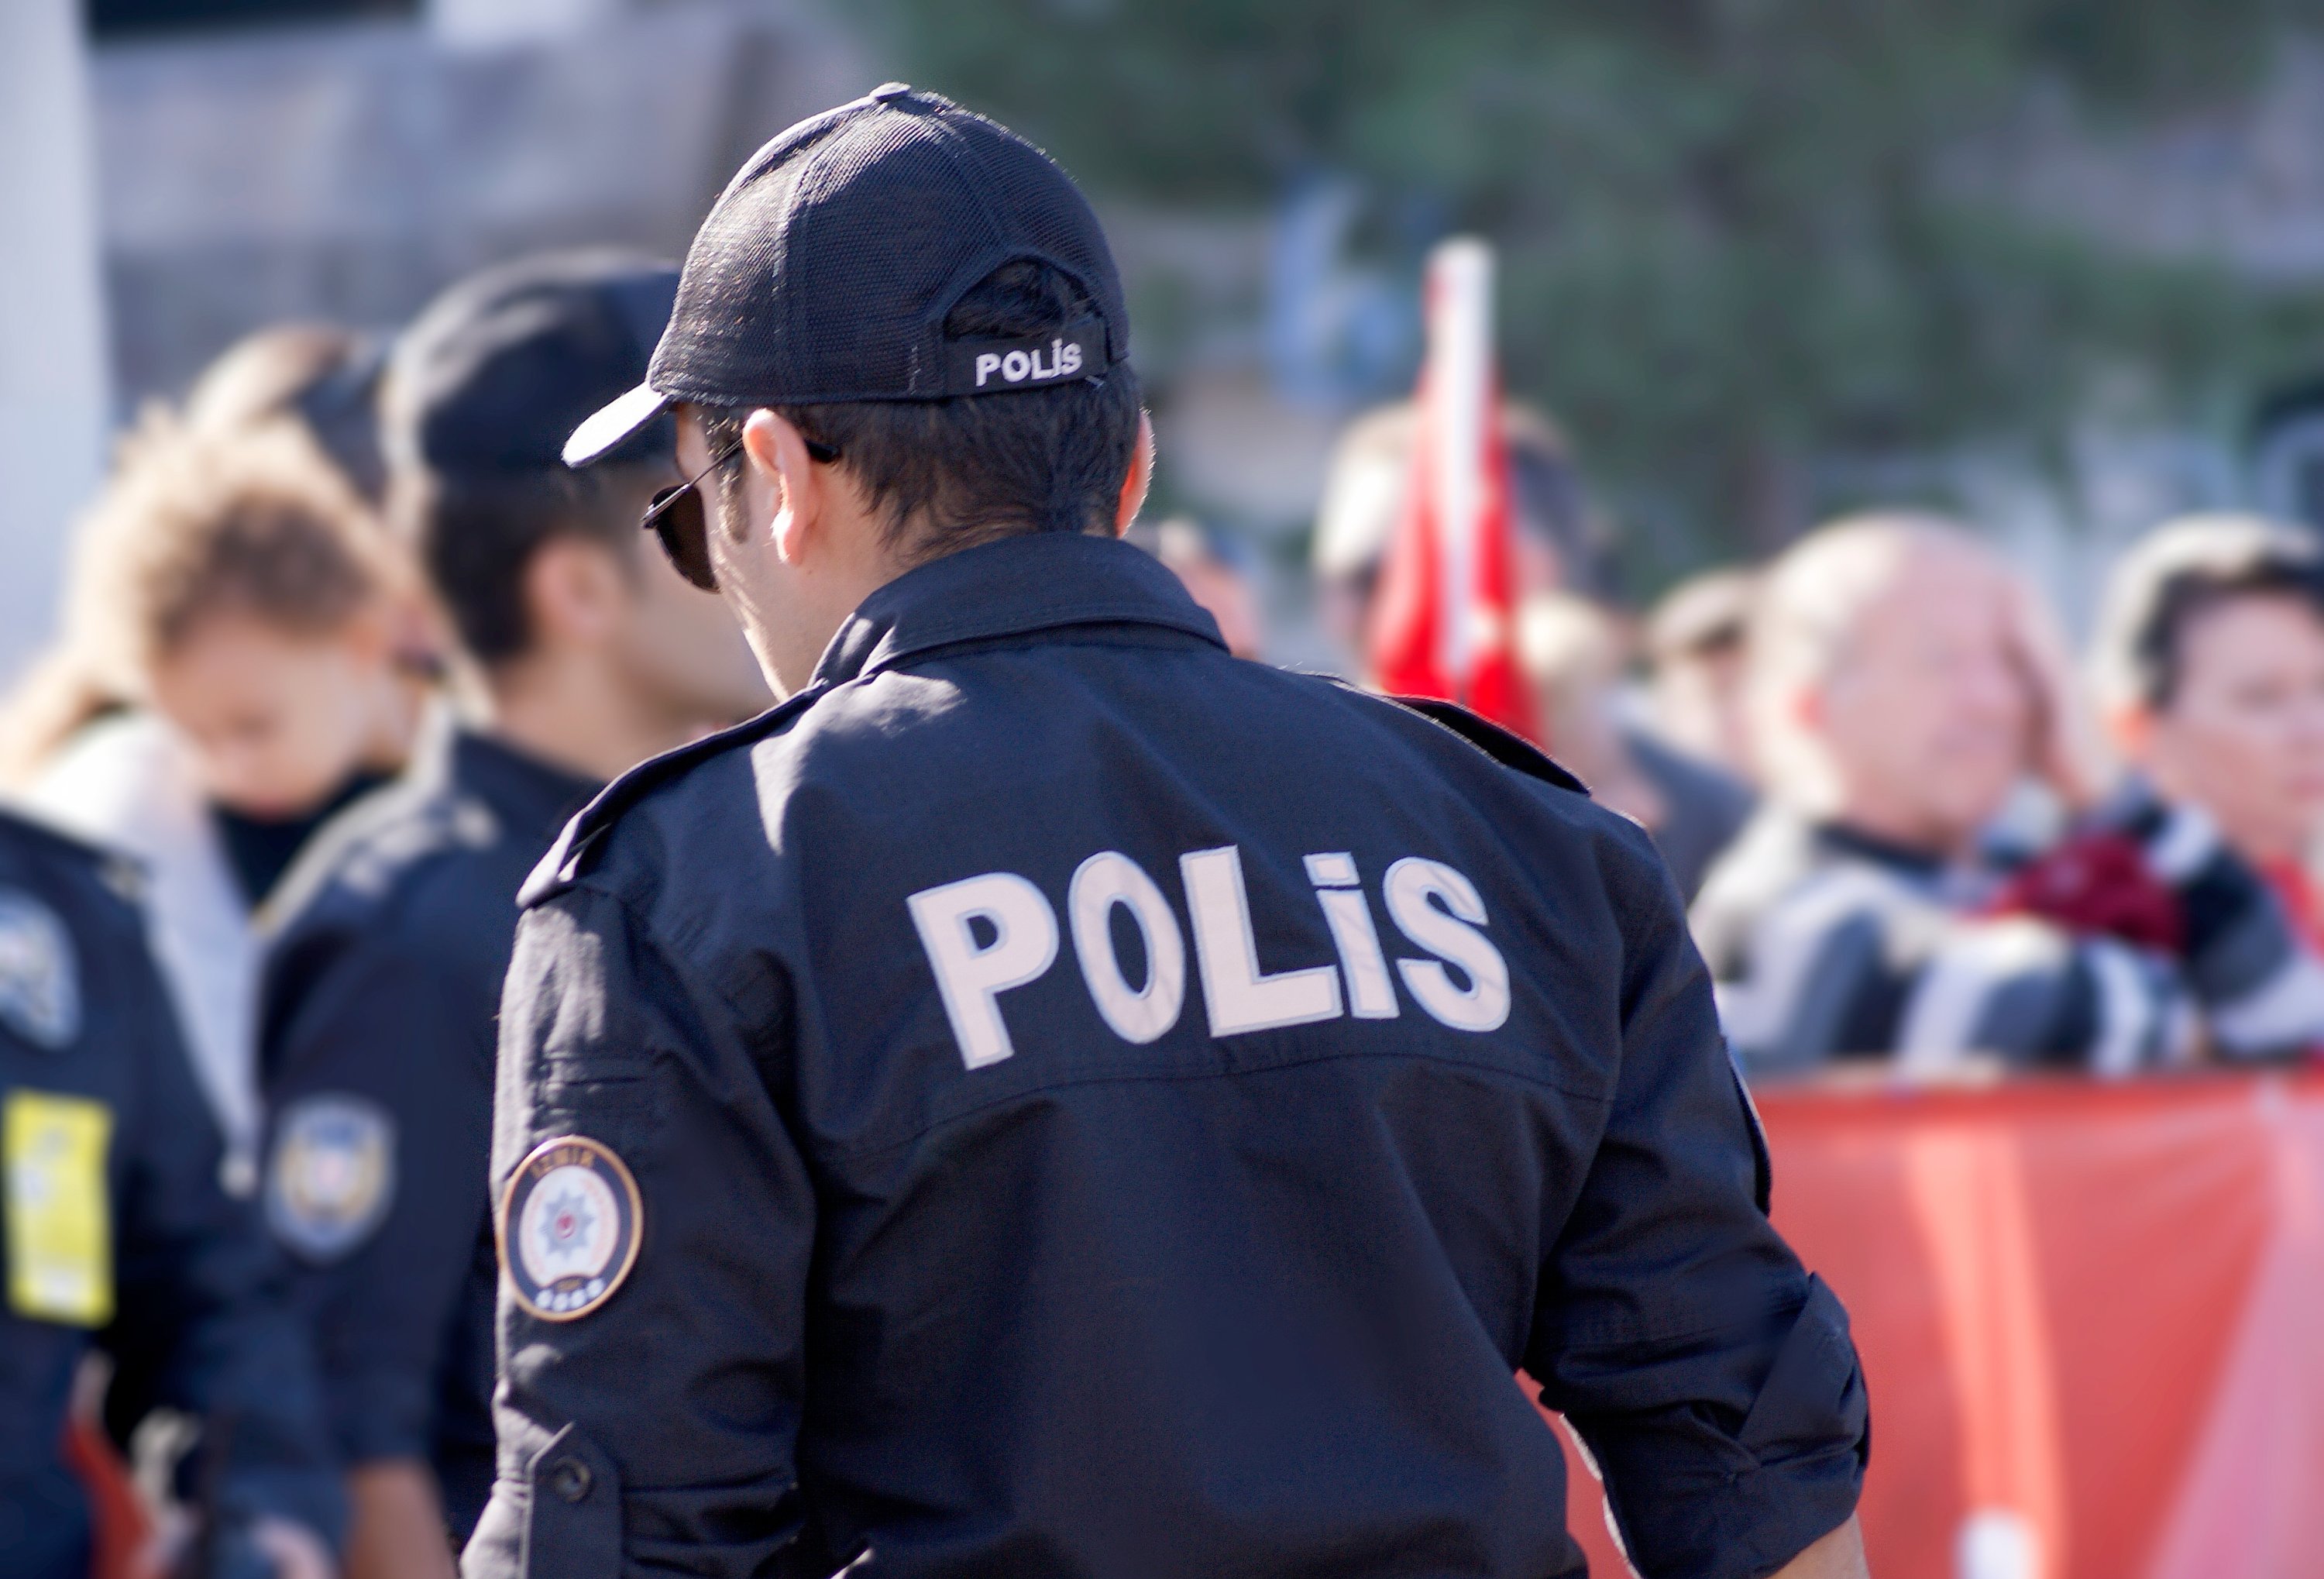 Türkiyədə polis iki həmkarını öldürdü - VİDEO